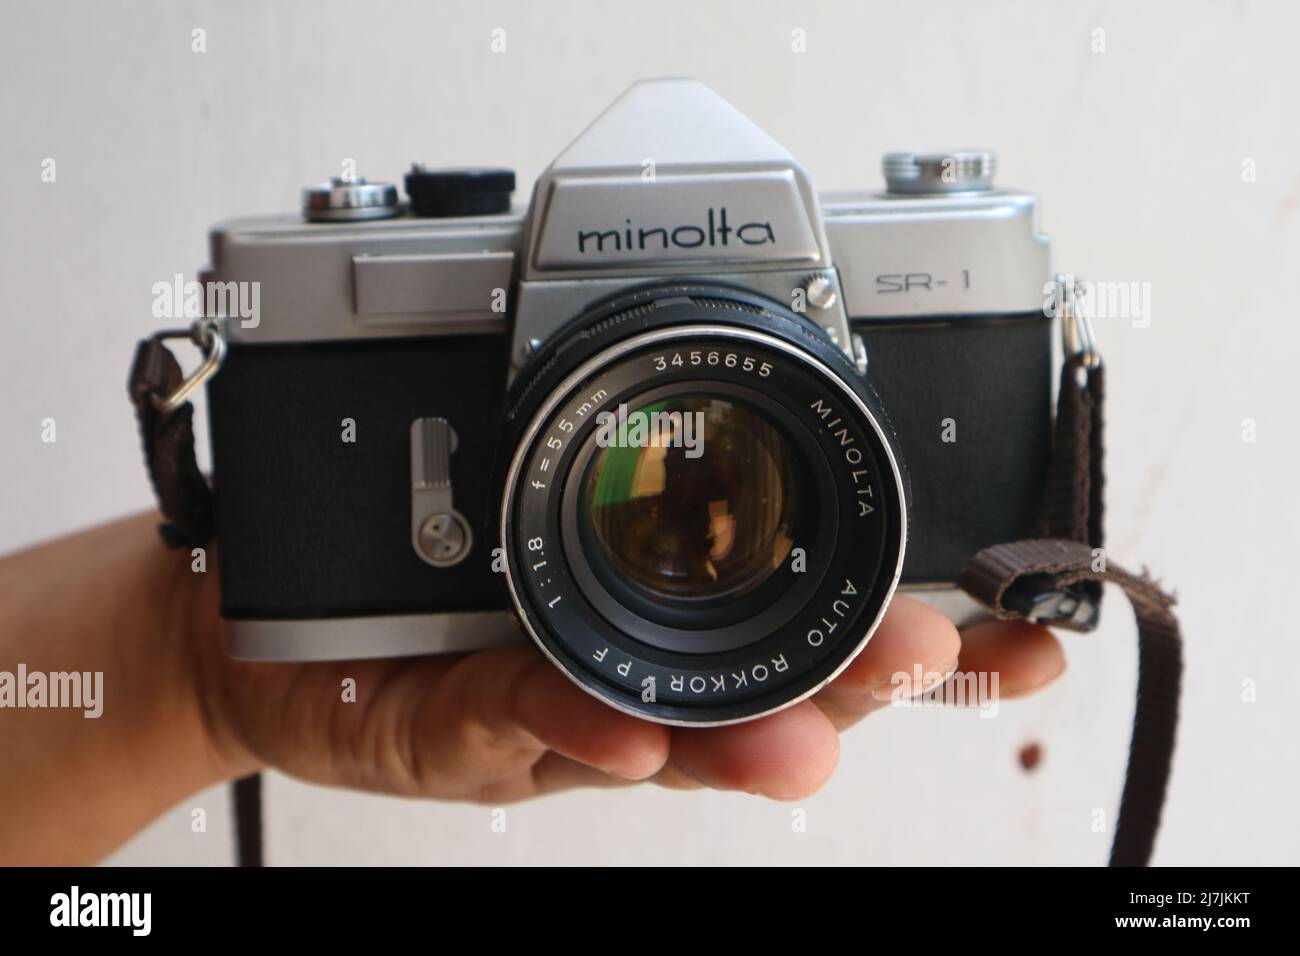 SIDOARJO, INDONESIA - 05 de mayo de 2022: Minolta SR-1 con MC Rokkor-PF 1:1,4 f=58mm Vintage 35mm cámara de película analógica, lanzada en 1966. Foto de stock